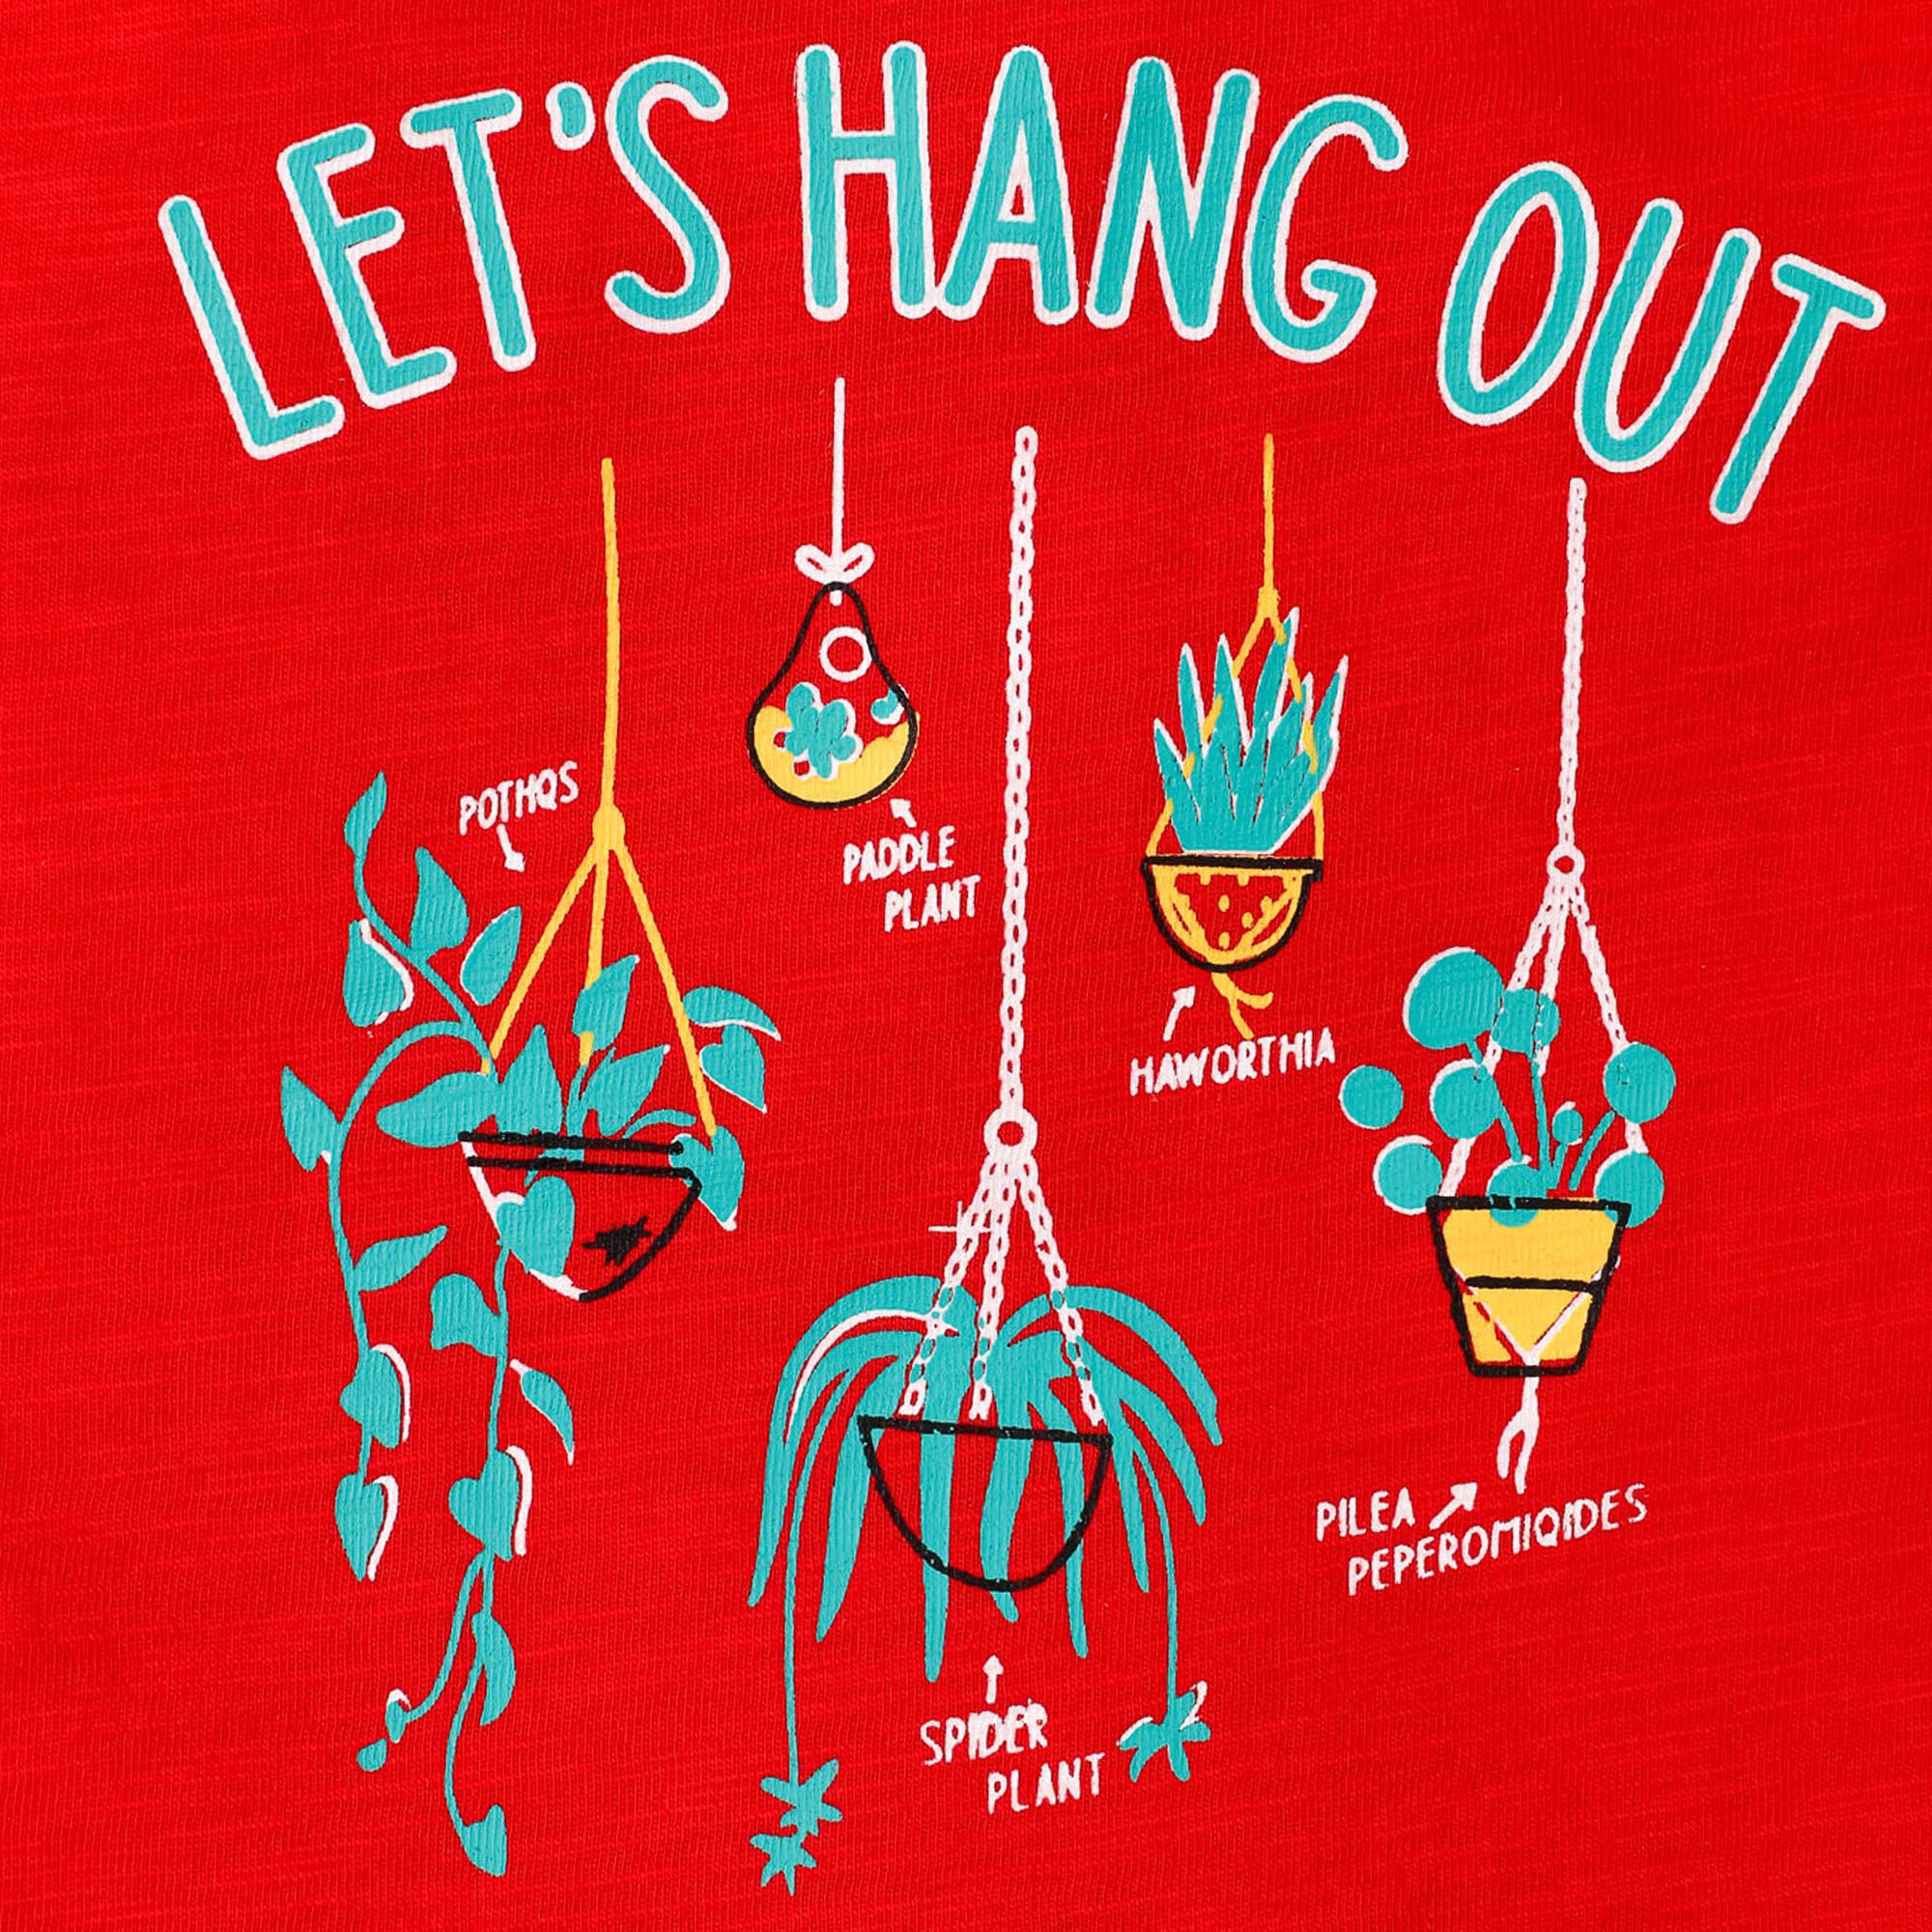 Hangout Red Top